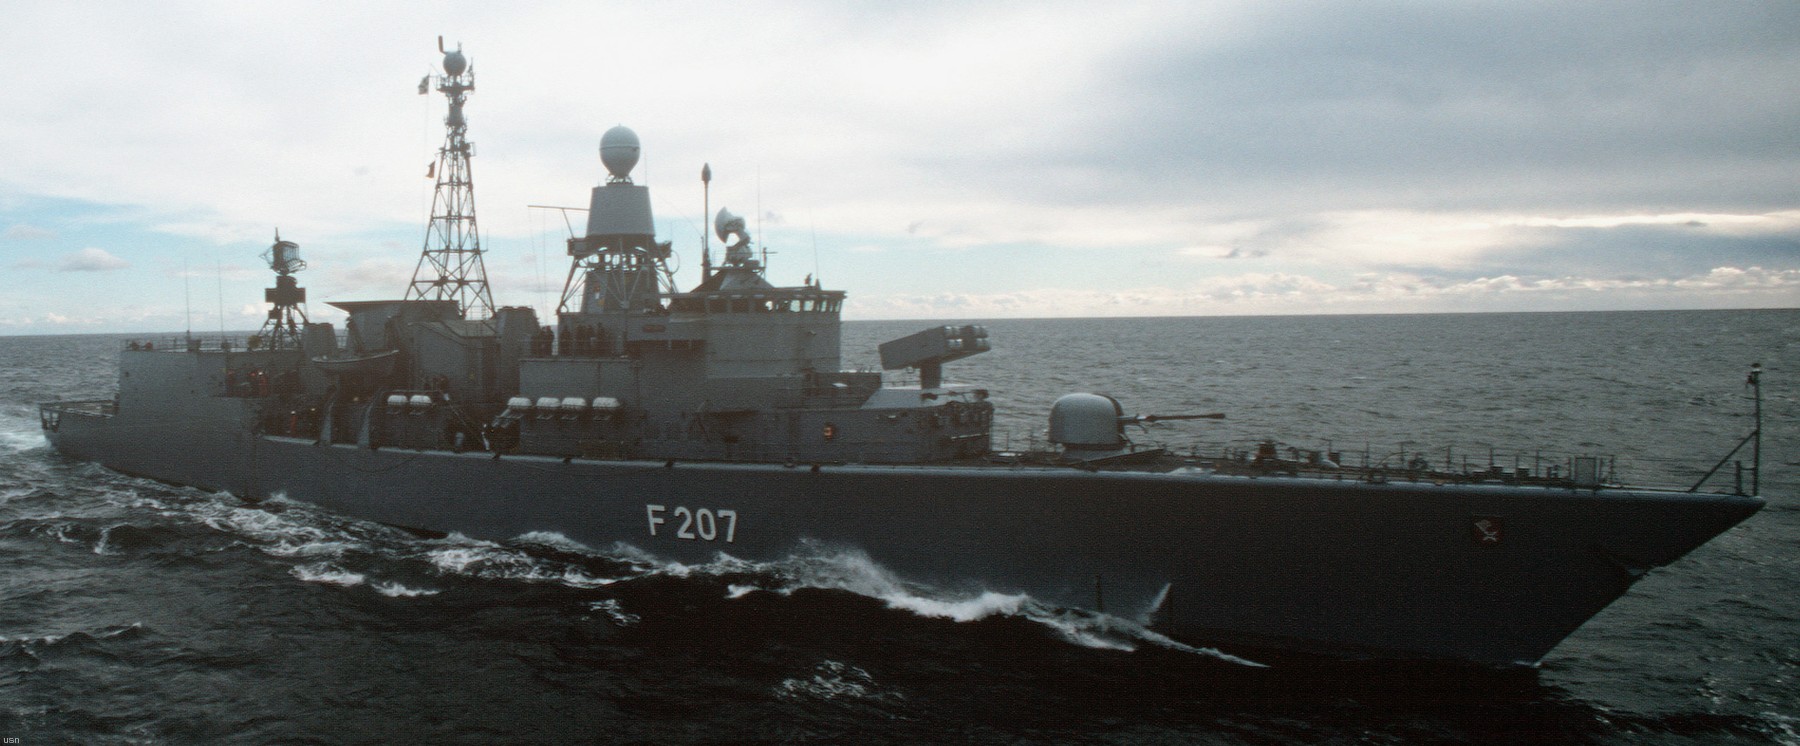 f-207 fgs bremen type 122 class frigate german navy 14